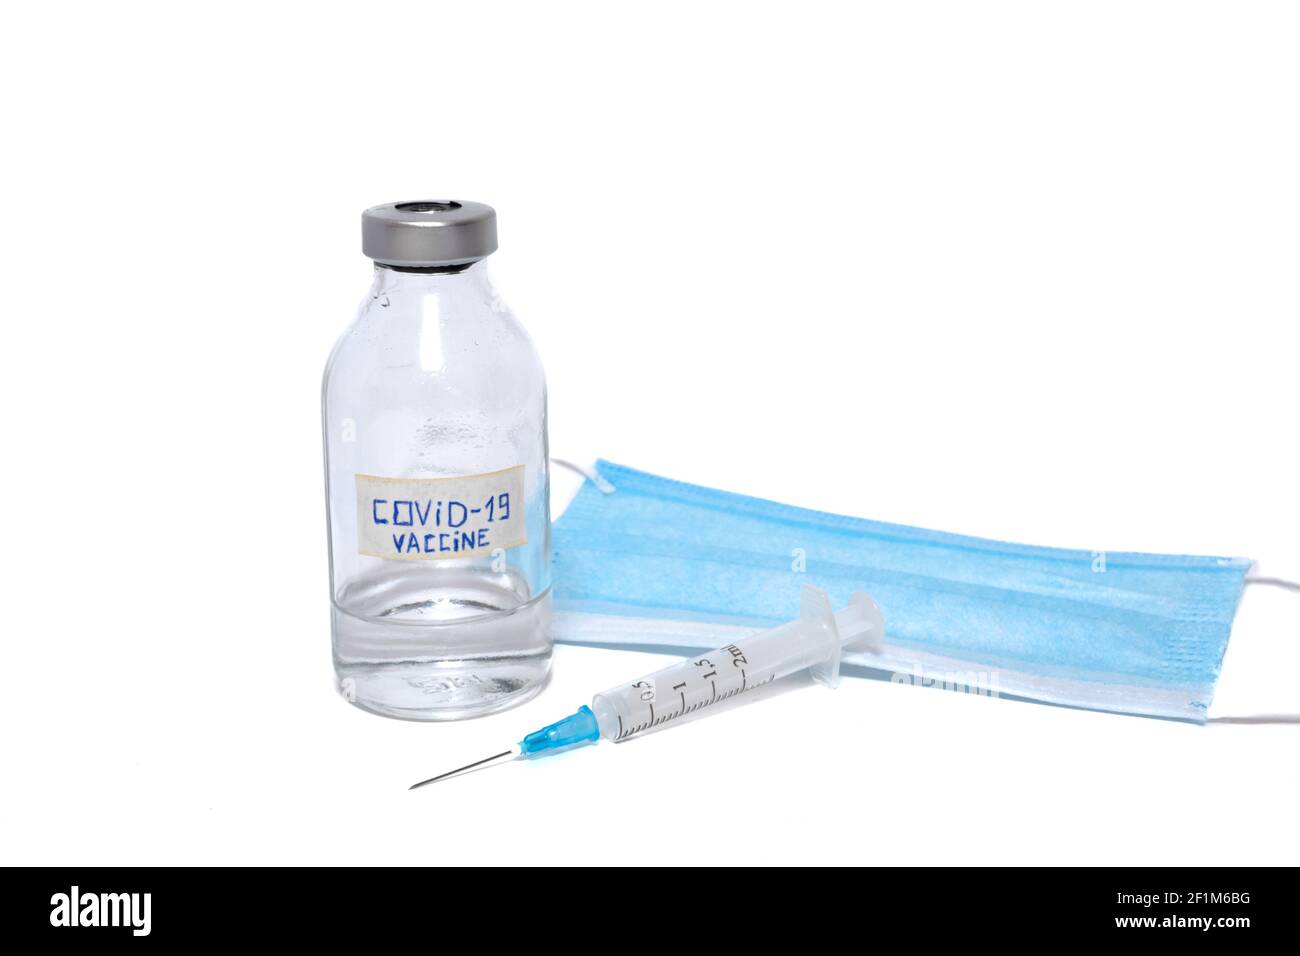 Coronavirus-Impfampulle, Einwegspritze und medizinische Gesichtsmaske isoliert auf weißem Hintergrund Stockfoto